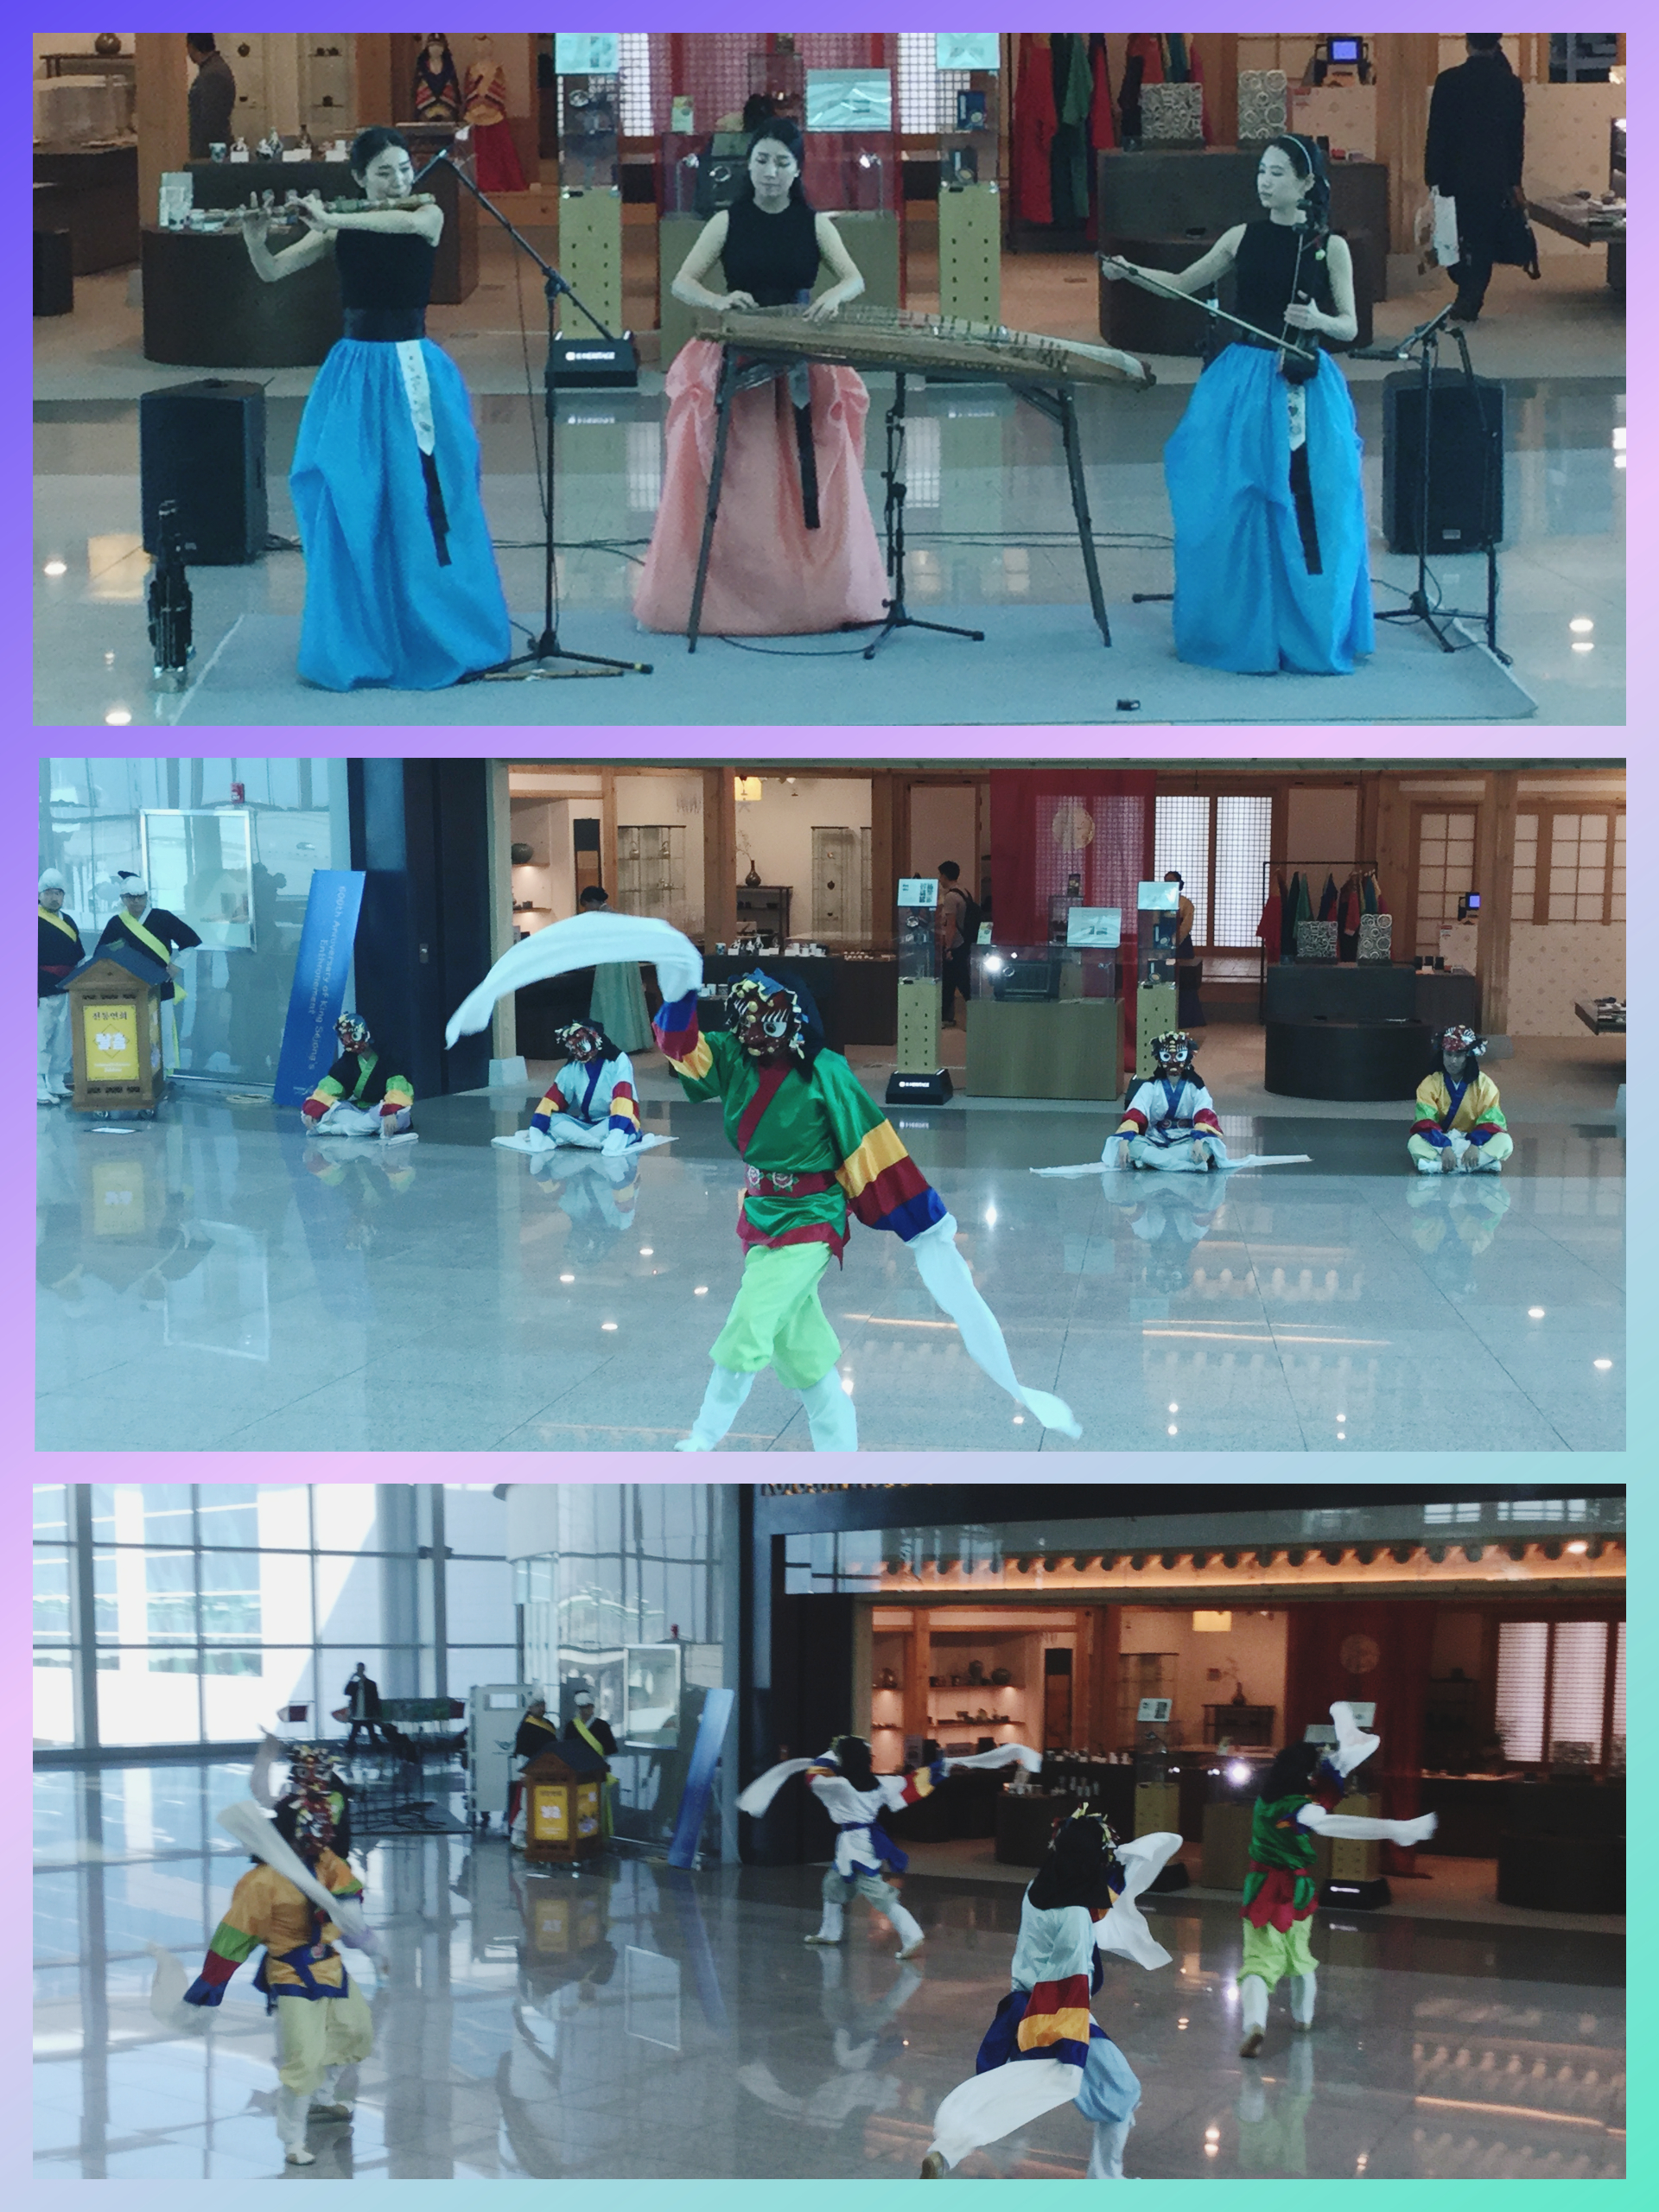 Musiques et danses à l’aéroport de Seoul